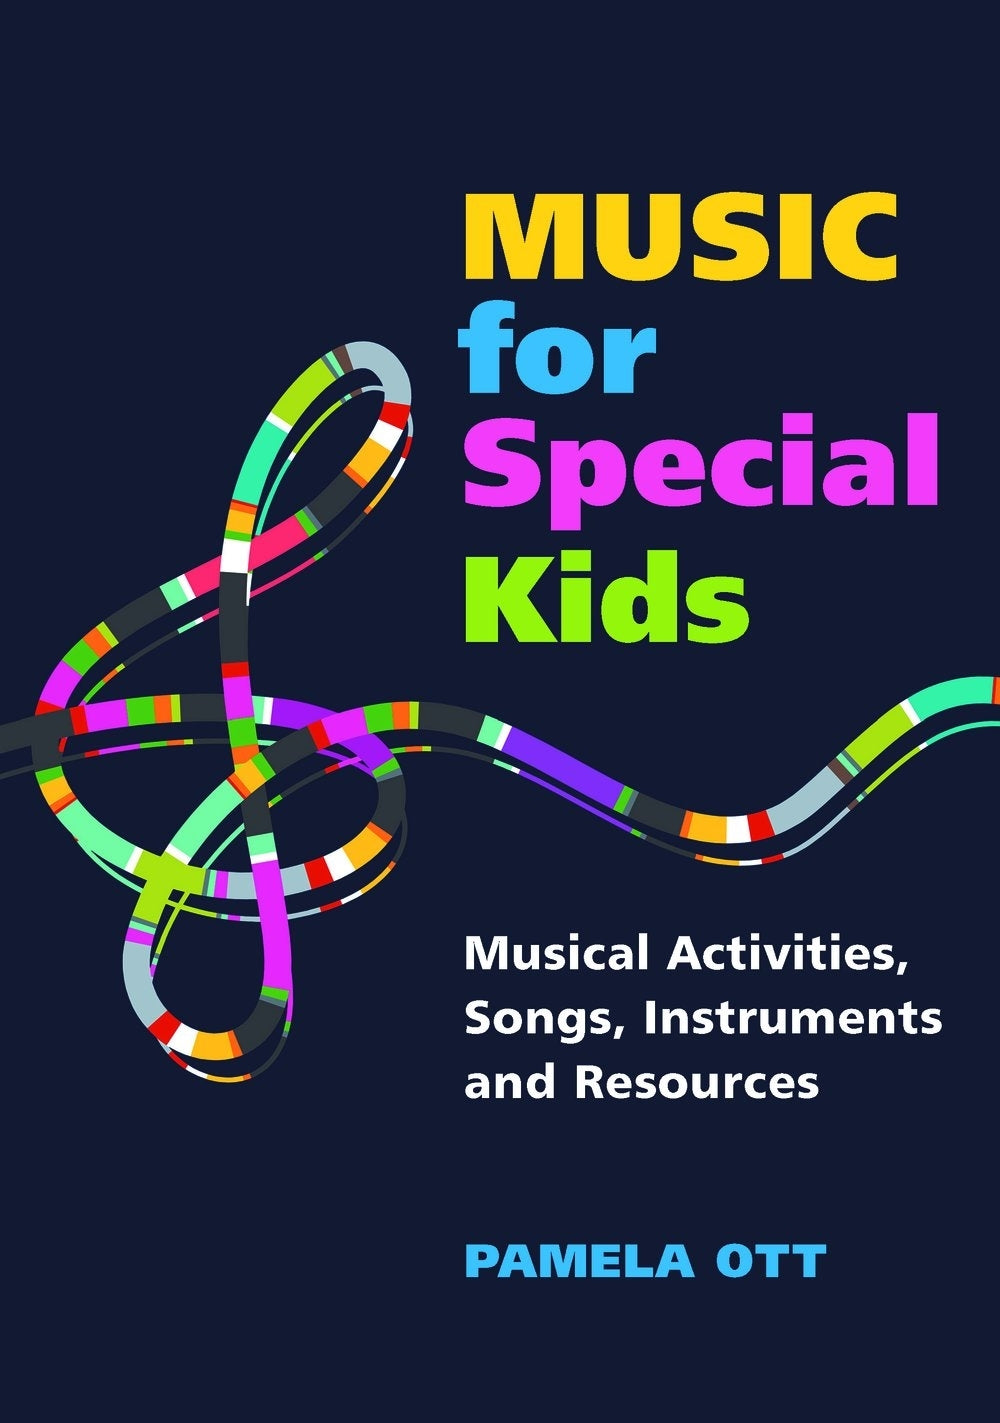 Music for Special Kids by Pamela Ott